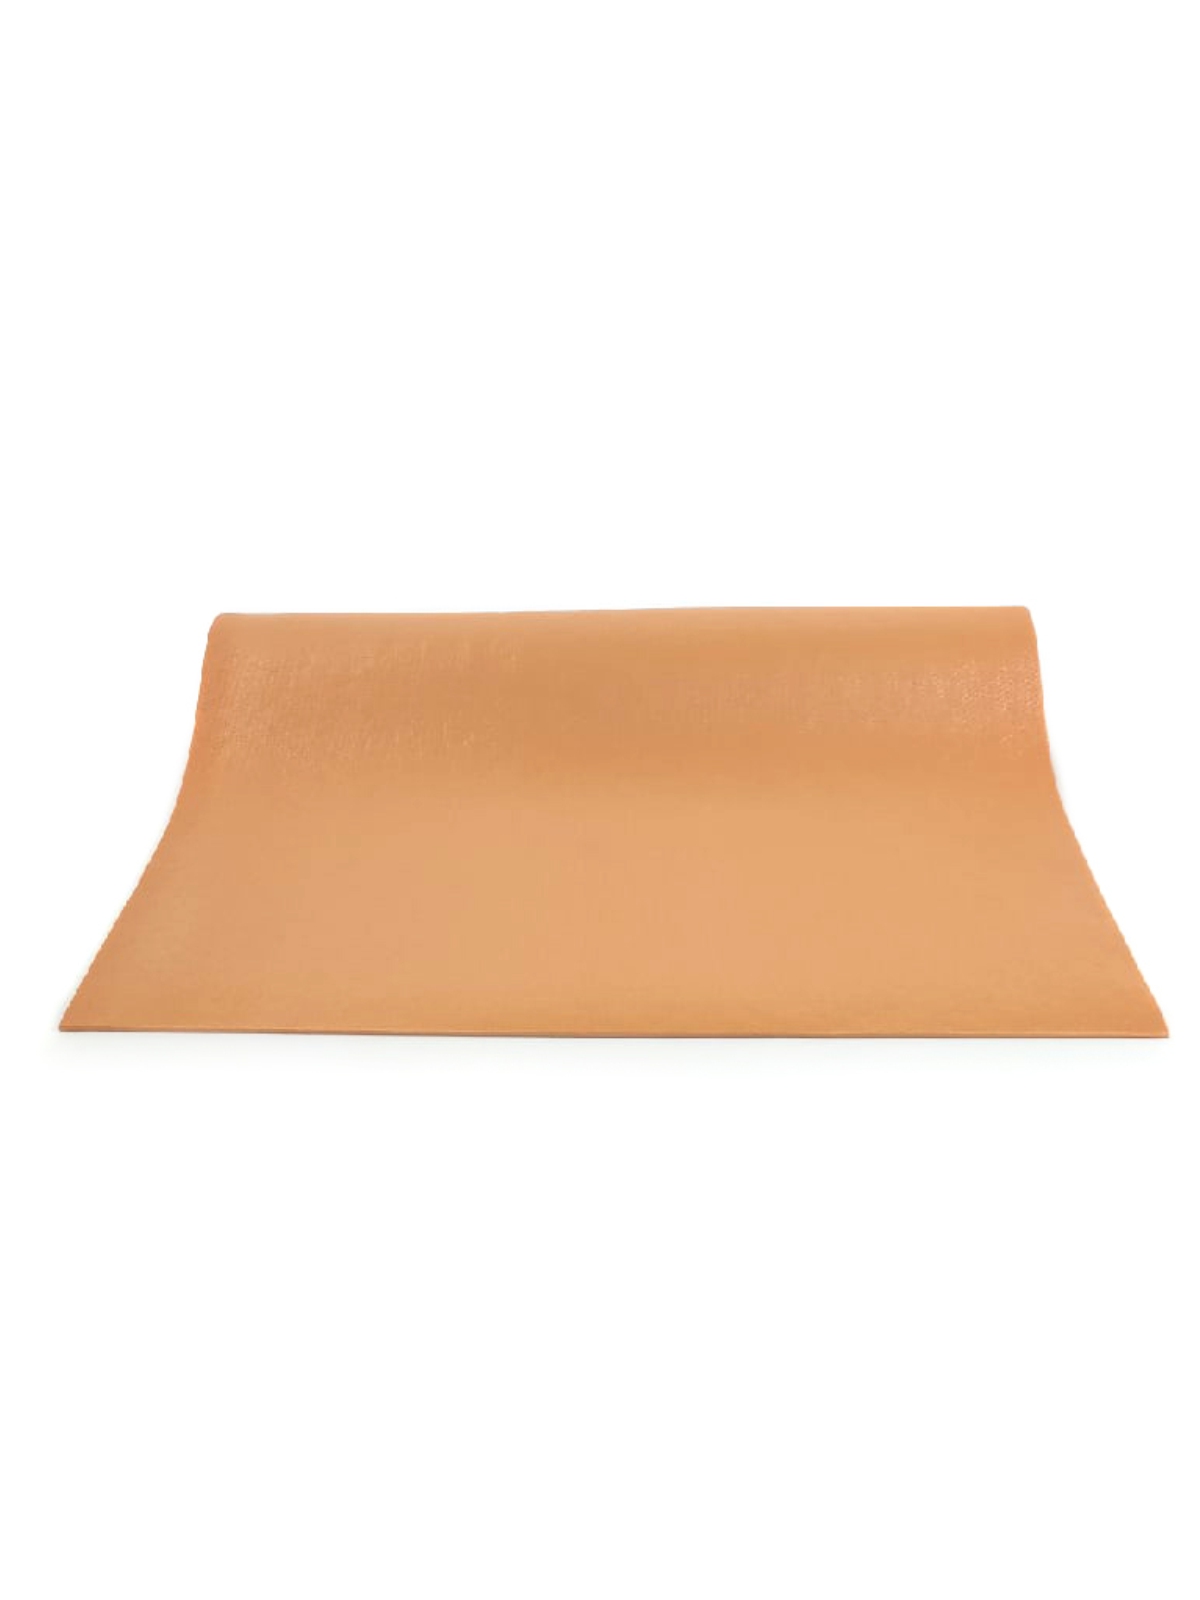 Коврик для йоги Puna Pro (2 кг, 185 см, 4.5 мм, оранжевый, 60 см) коврик для йоги puna pro limited edition 2 кг 183 см 4 5 мм фисташковый 60 см